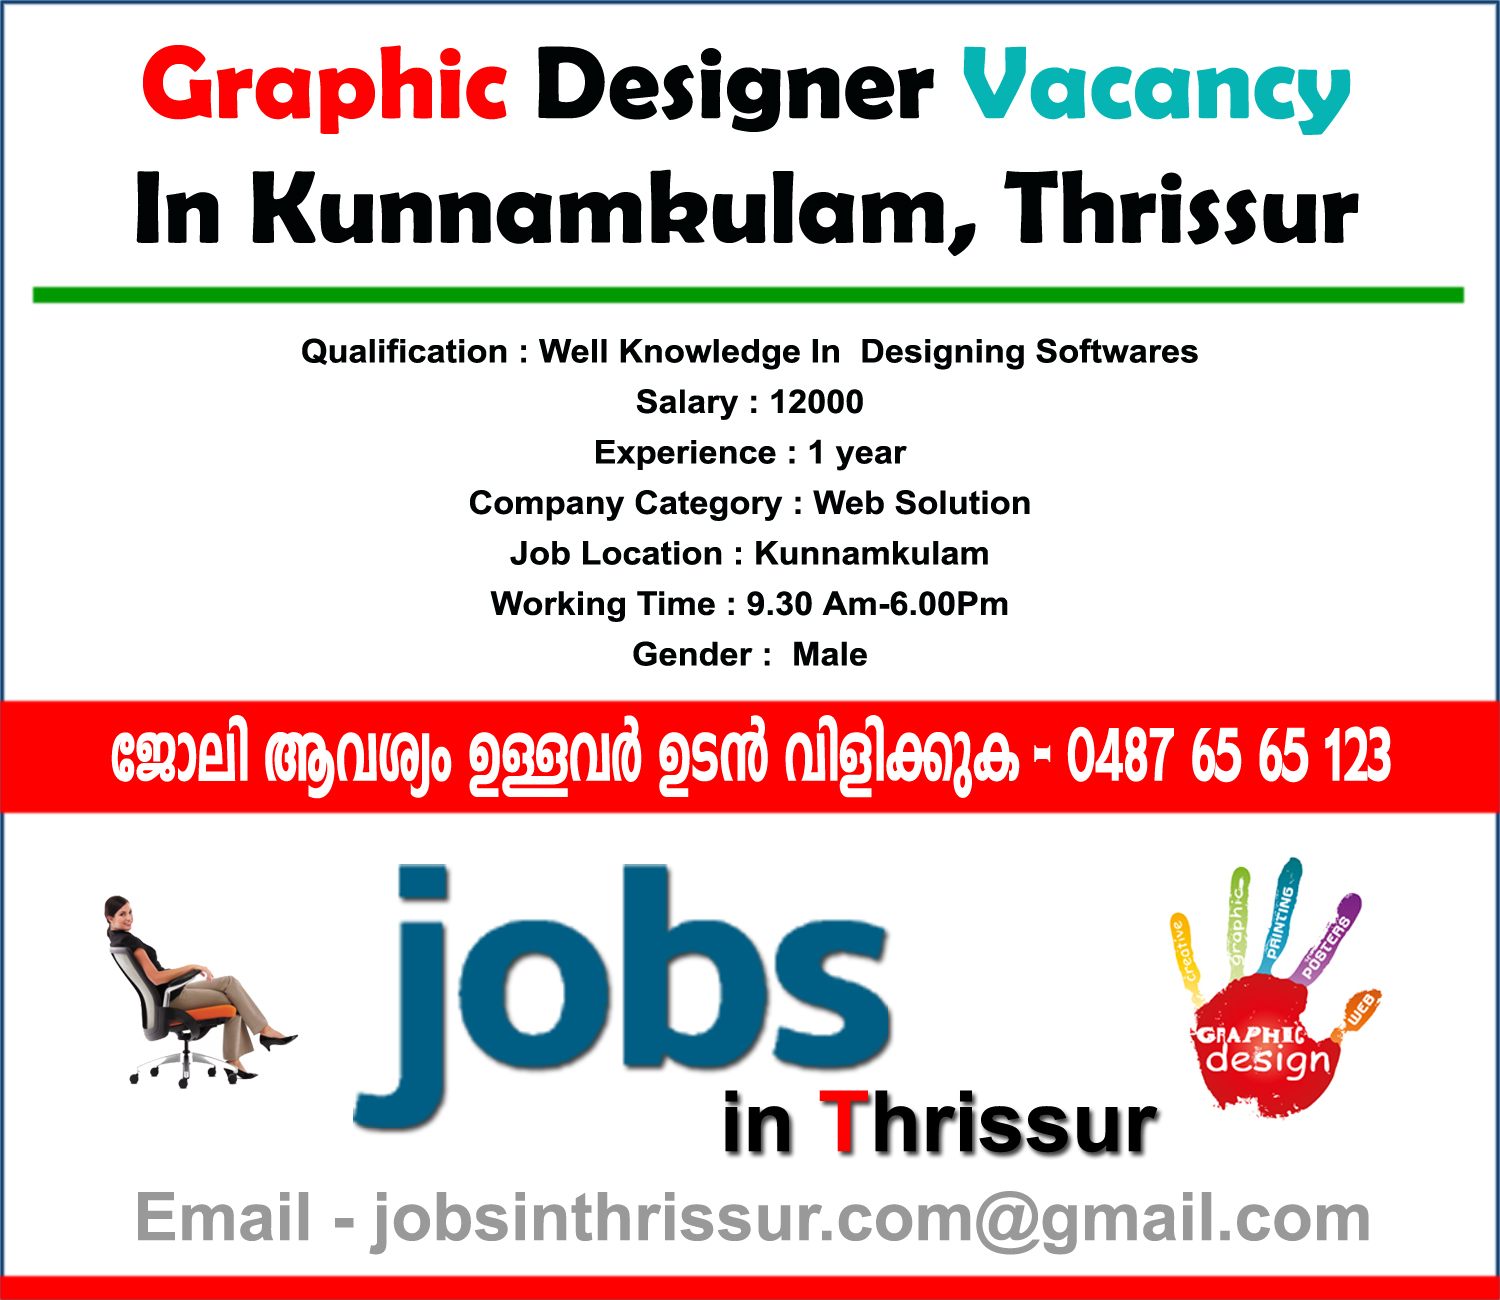 Graphic Designer Vacancy In Kunnamkulam Thrissur